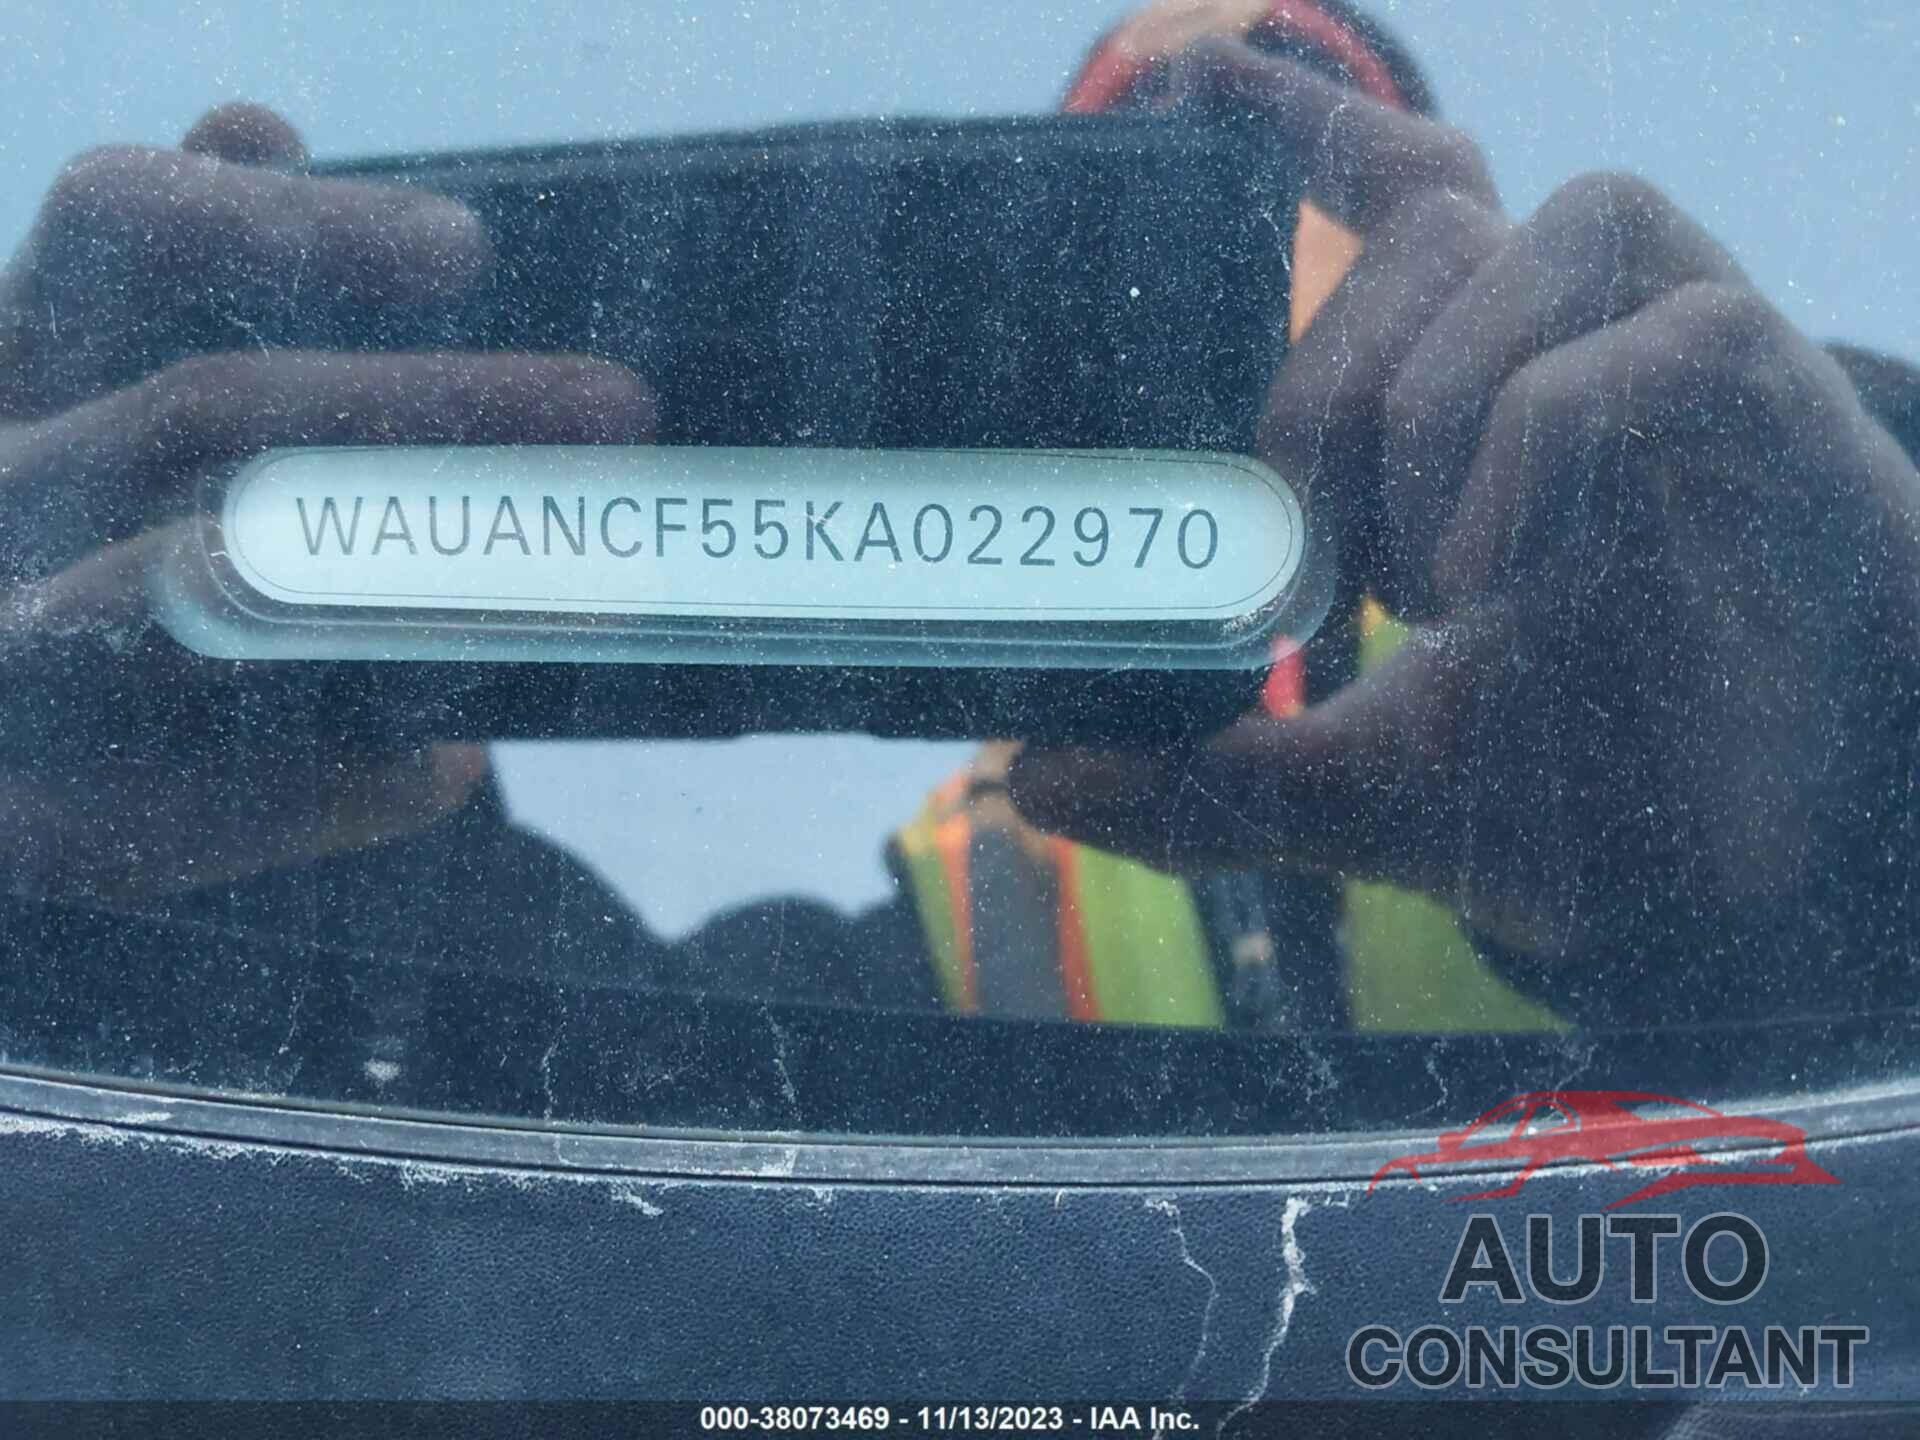 AUDI A5 SPORTBACK 2019 - WAUANCF55KA022970